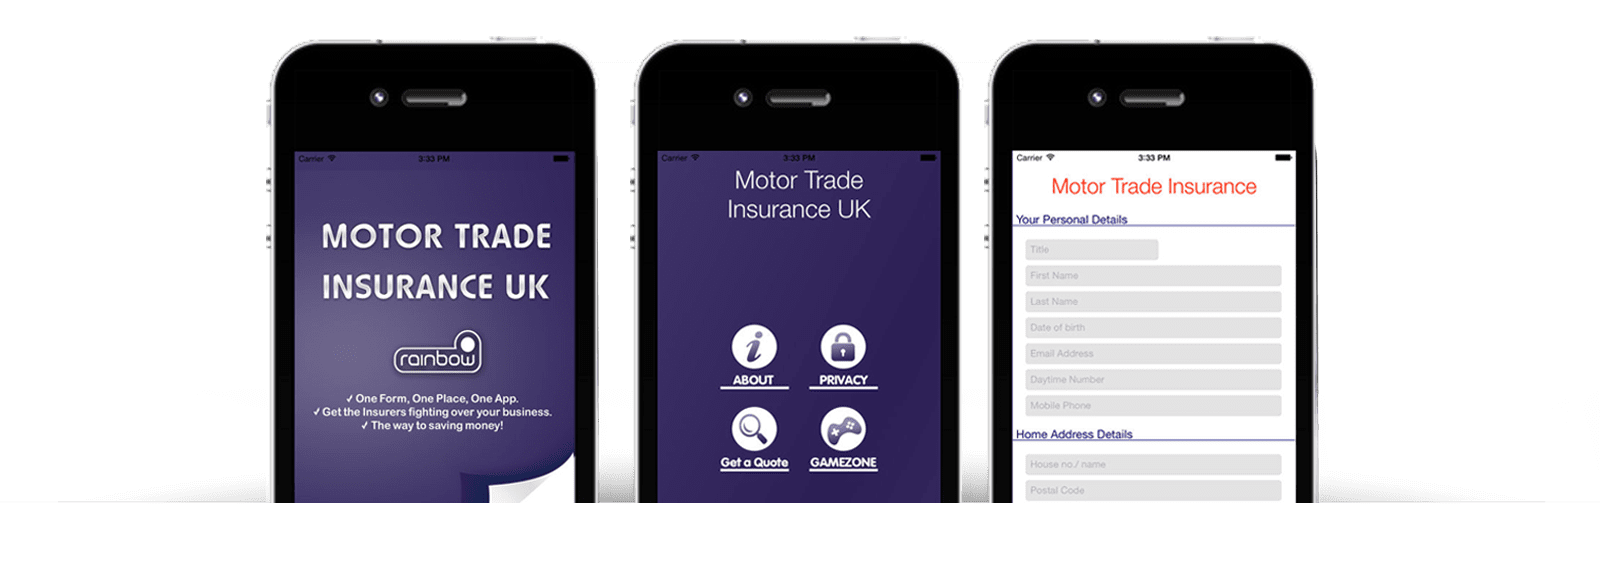 Motor Trade Insurance app